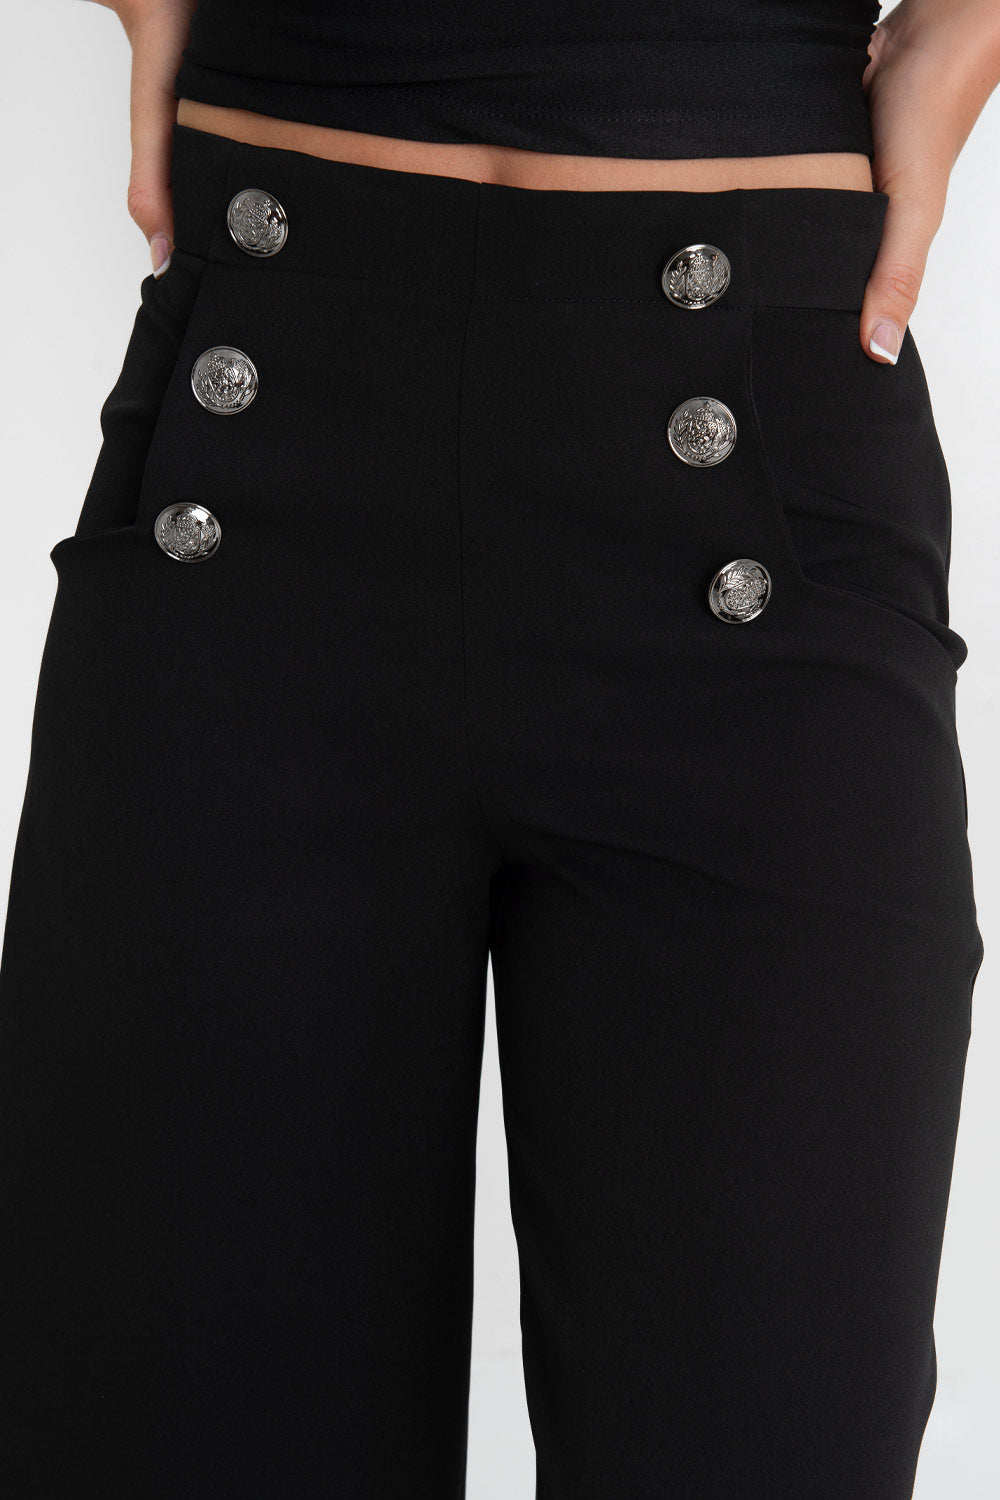 Pantalón marinero cropped flare fit, raya frontal, cintura alta con pretina y bolsillos delanteros con botones decorativos en contraste. Cierre lateral con cremallera oculta.